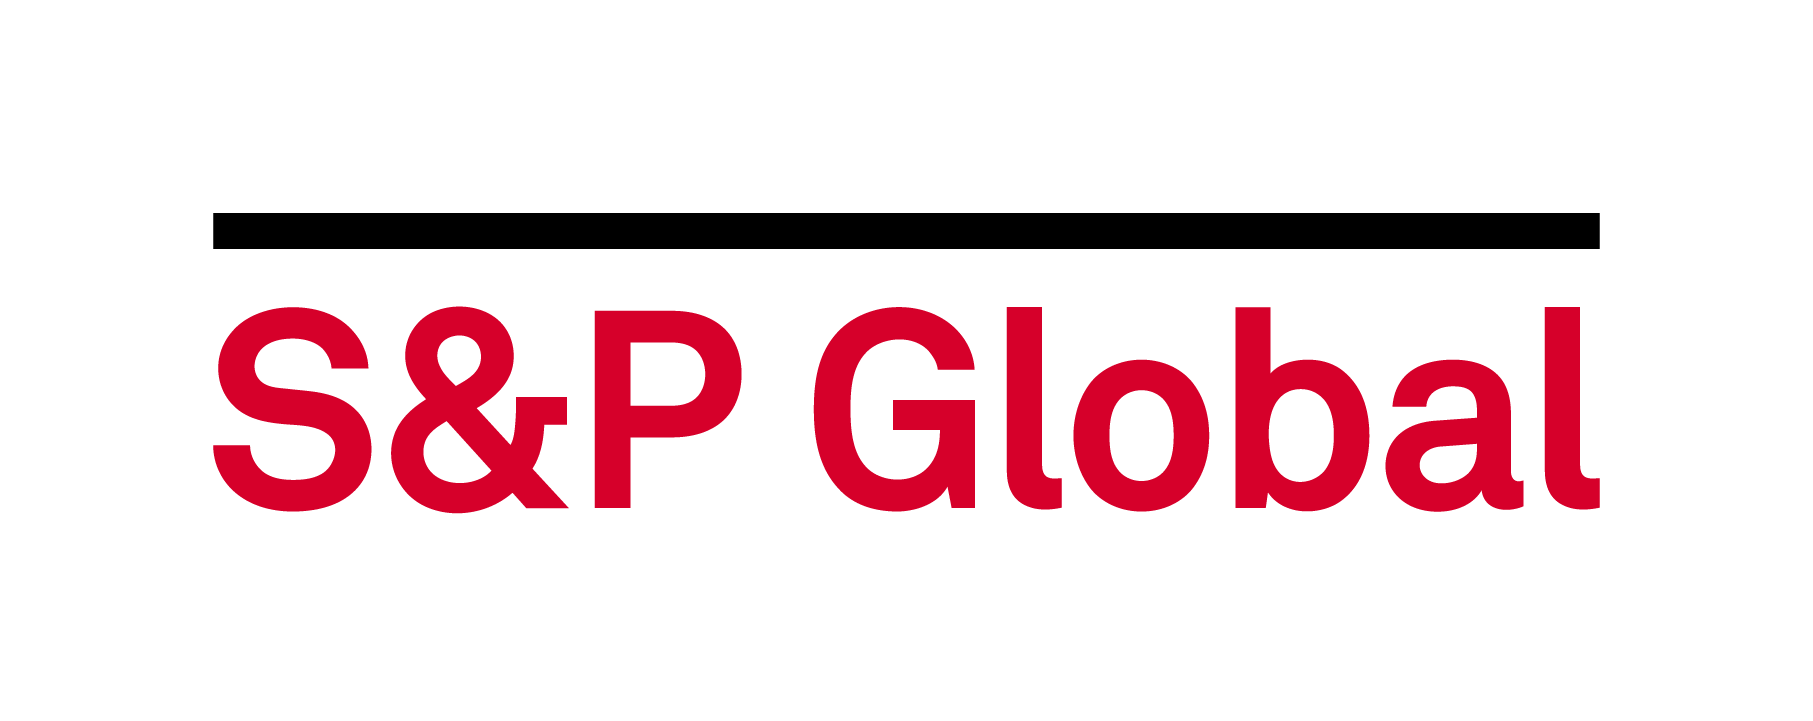 S p rating. S&P Global. S&P Global Platts. S&P логотип. Standard poor's логотип.